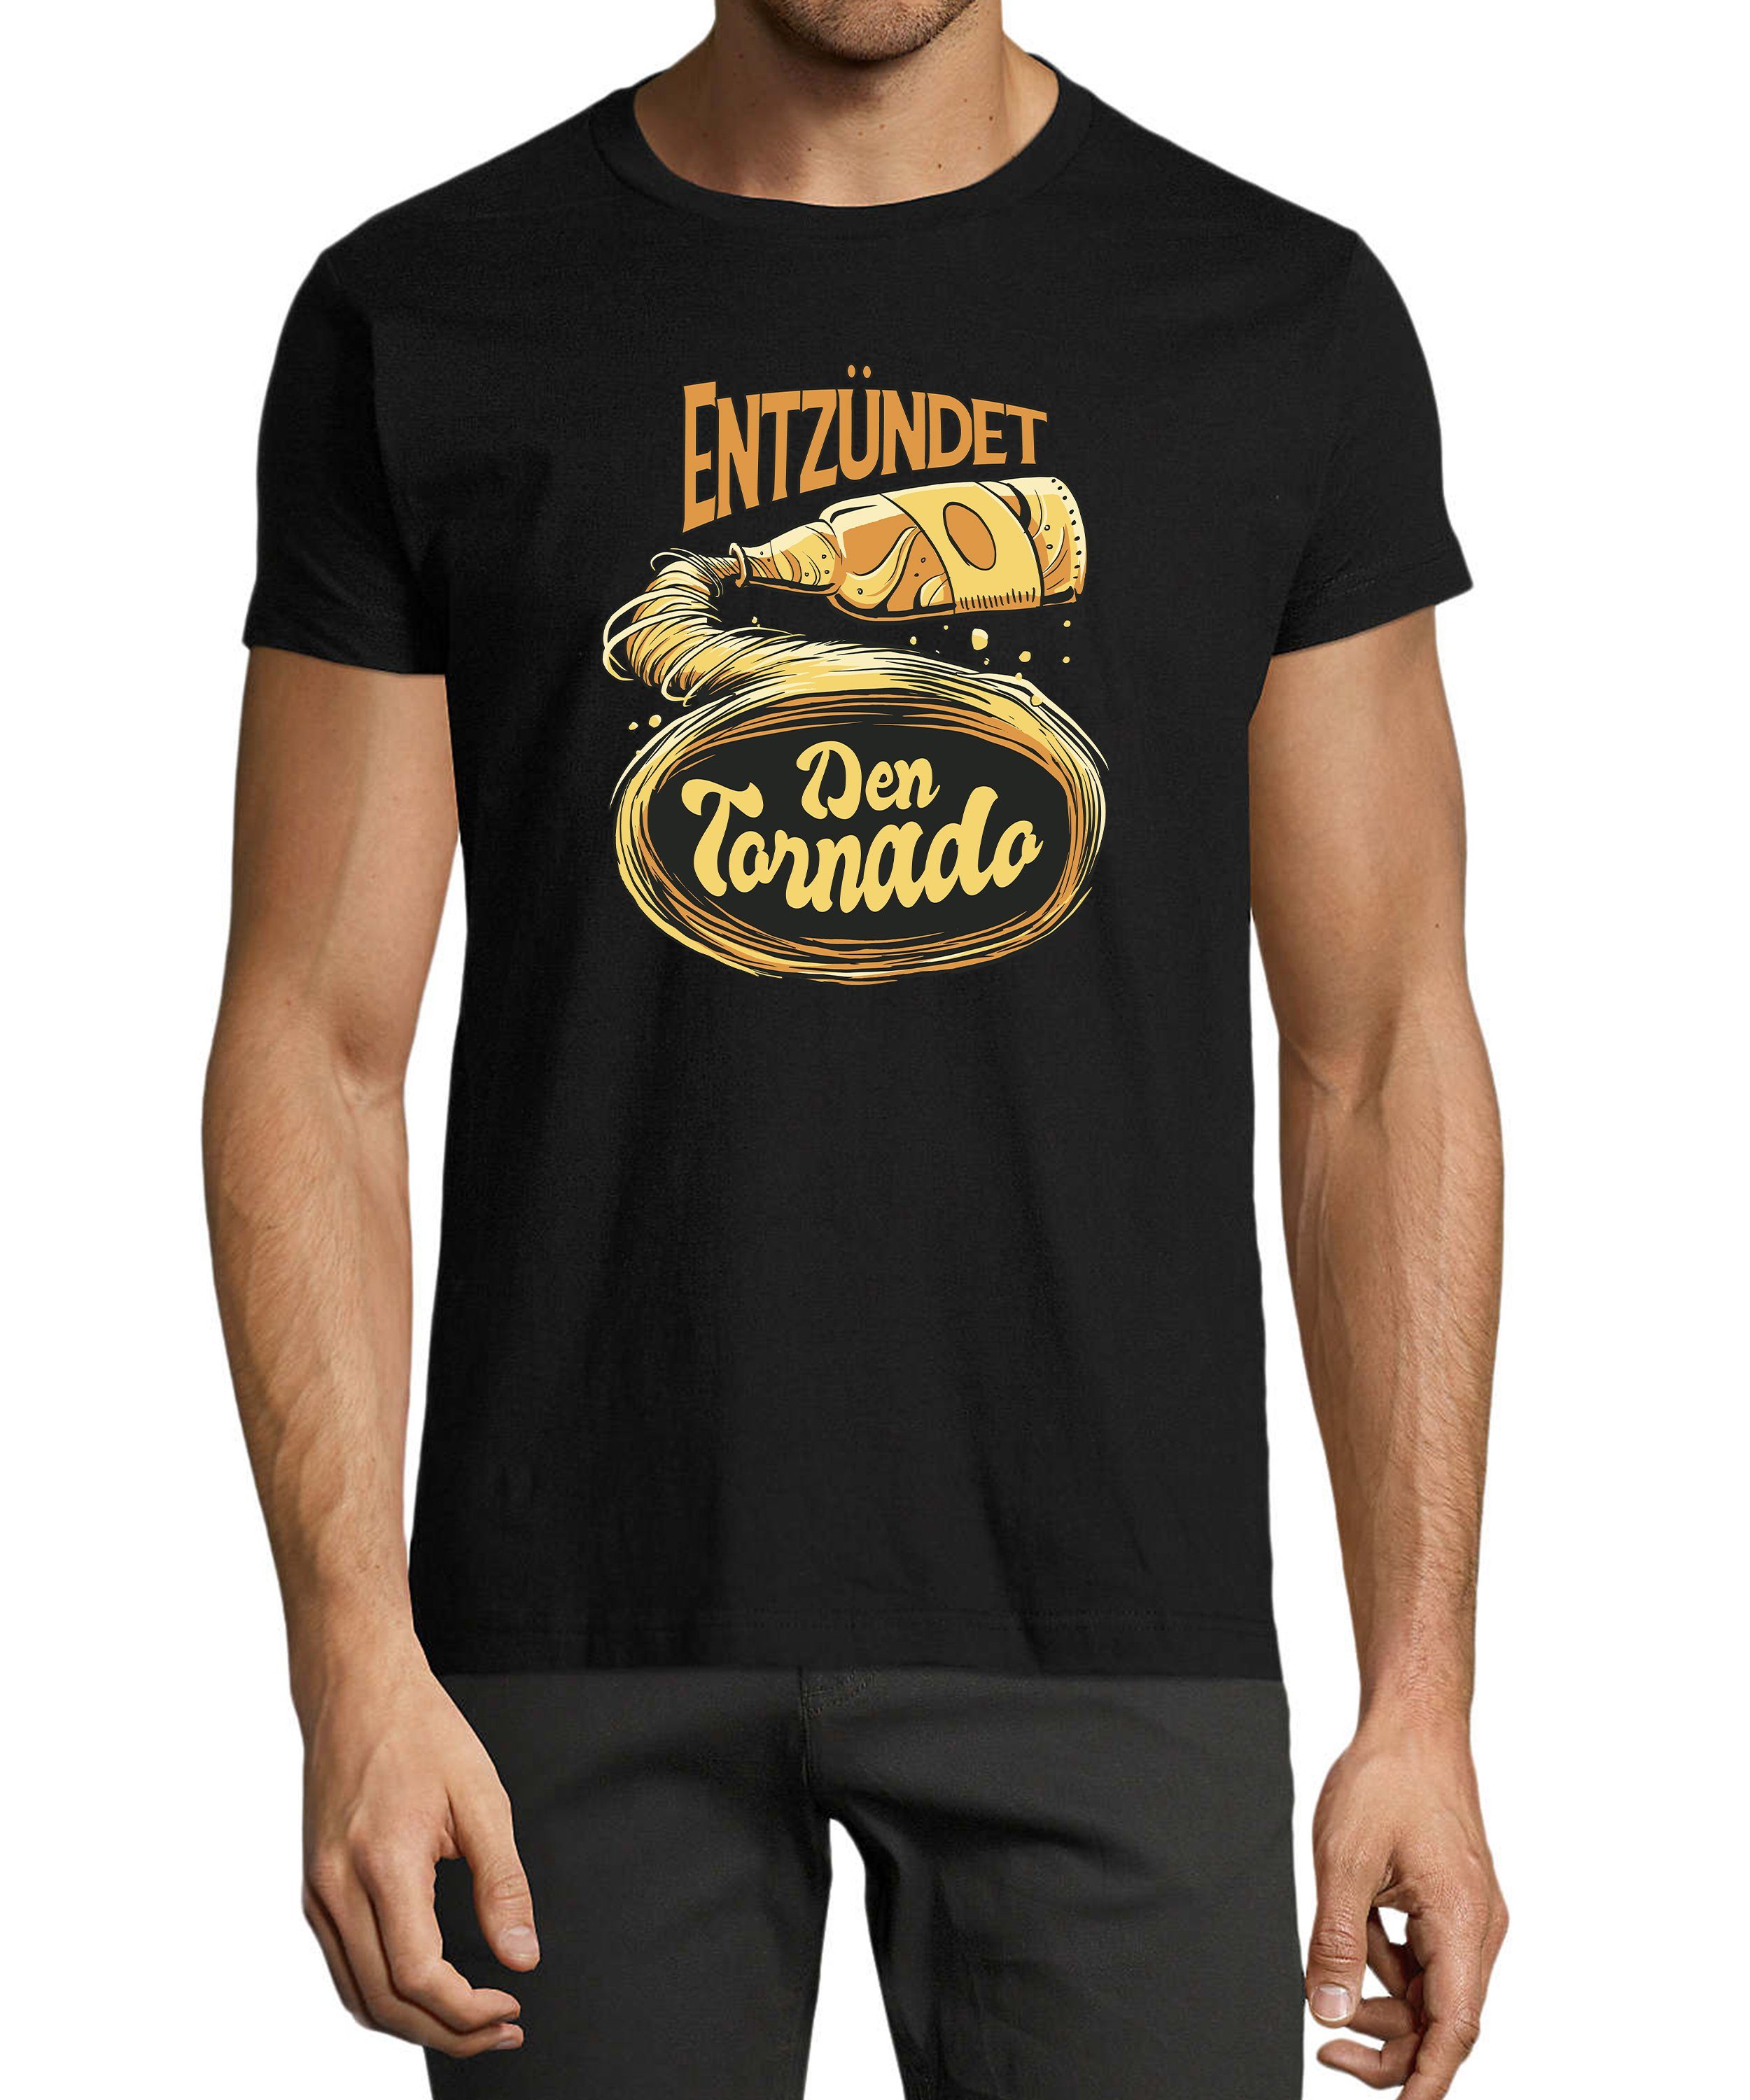 Print Tornado Shirt mit den schwarz T-Shirt MyDesign24 Fit, Trinkshirt Regular Aufdruck Herren - Entzündet Fun i302 Baumwollshirt Oktoberfest